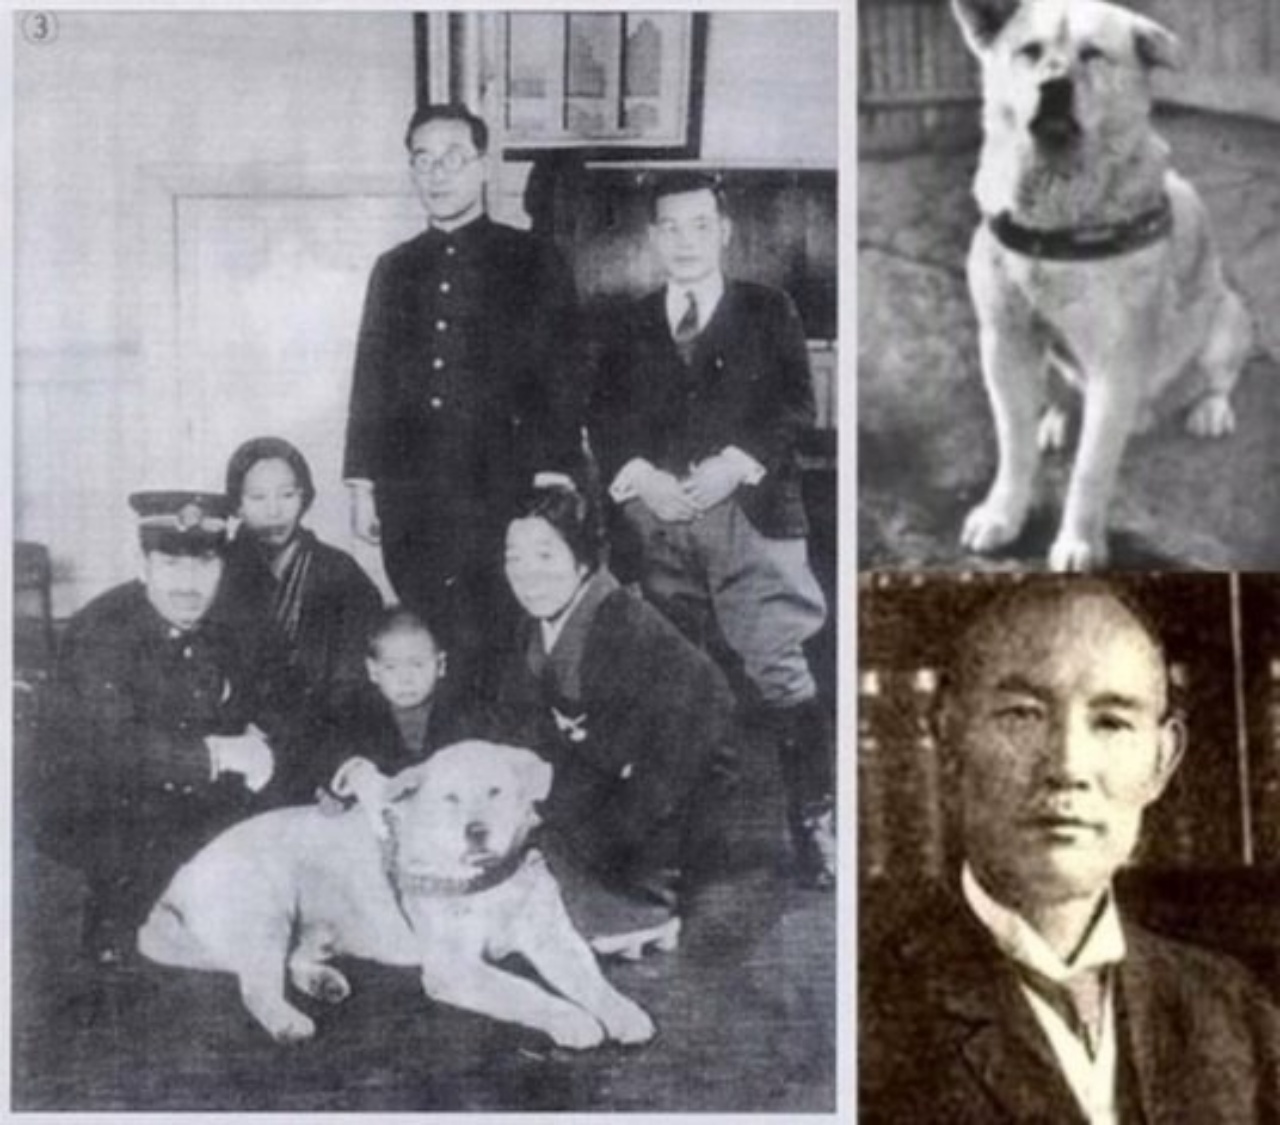 Le foto reali di Hachiko ed i monumenti eretti in suo onore